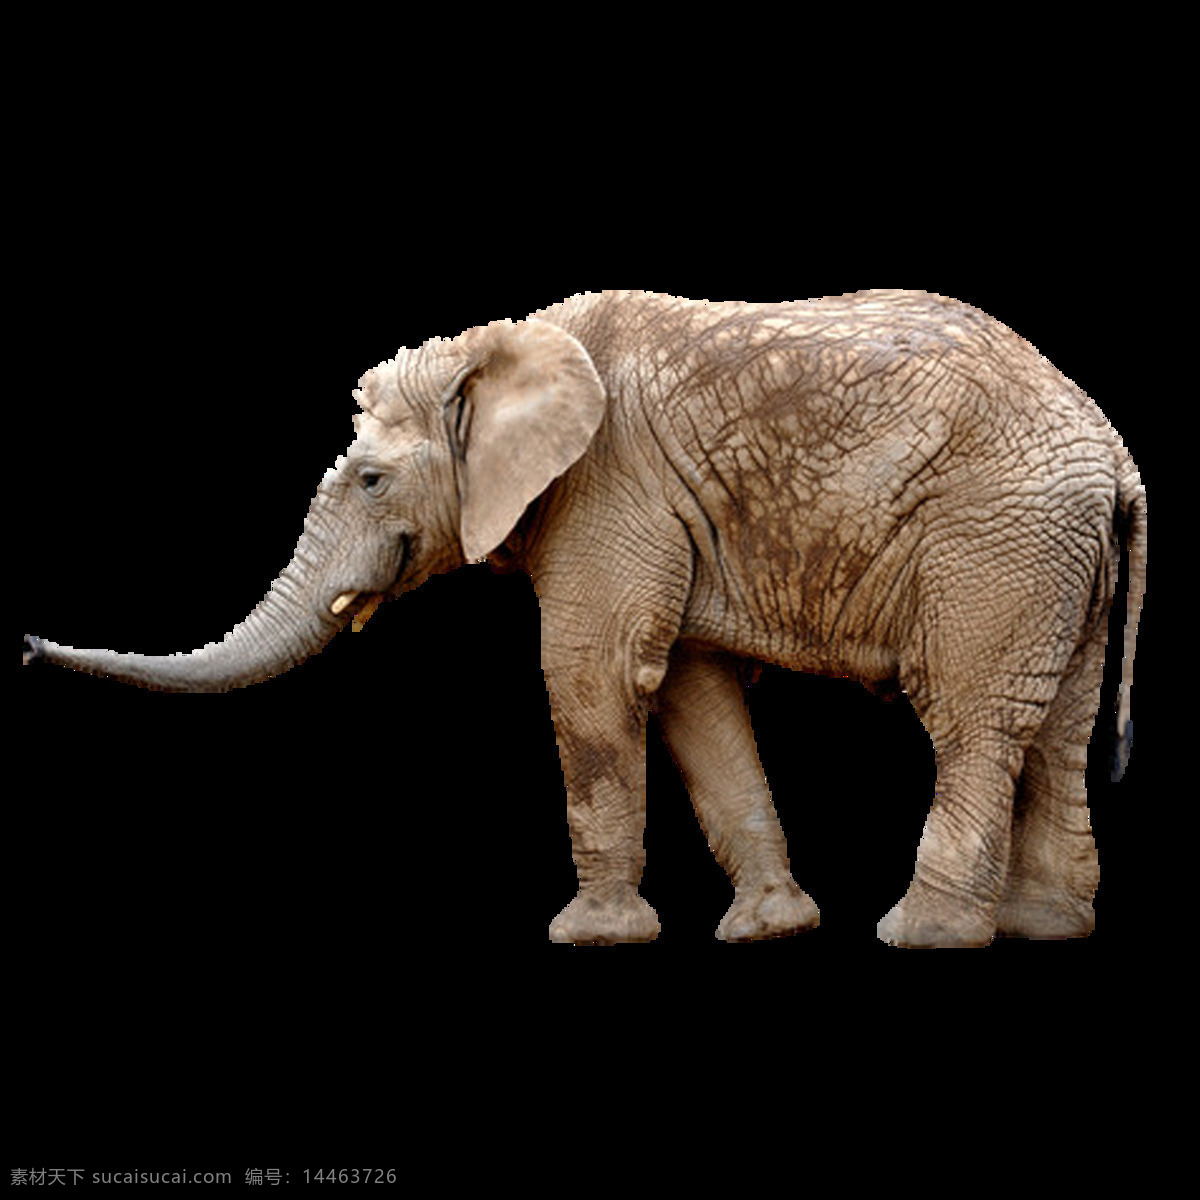 唯美 多彩 大象 绘画 灰色大象 写实 生动 形象